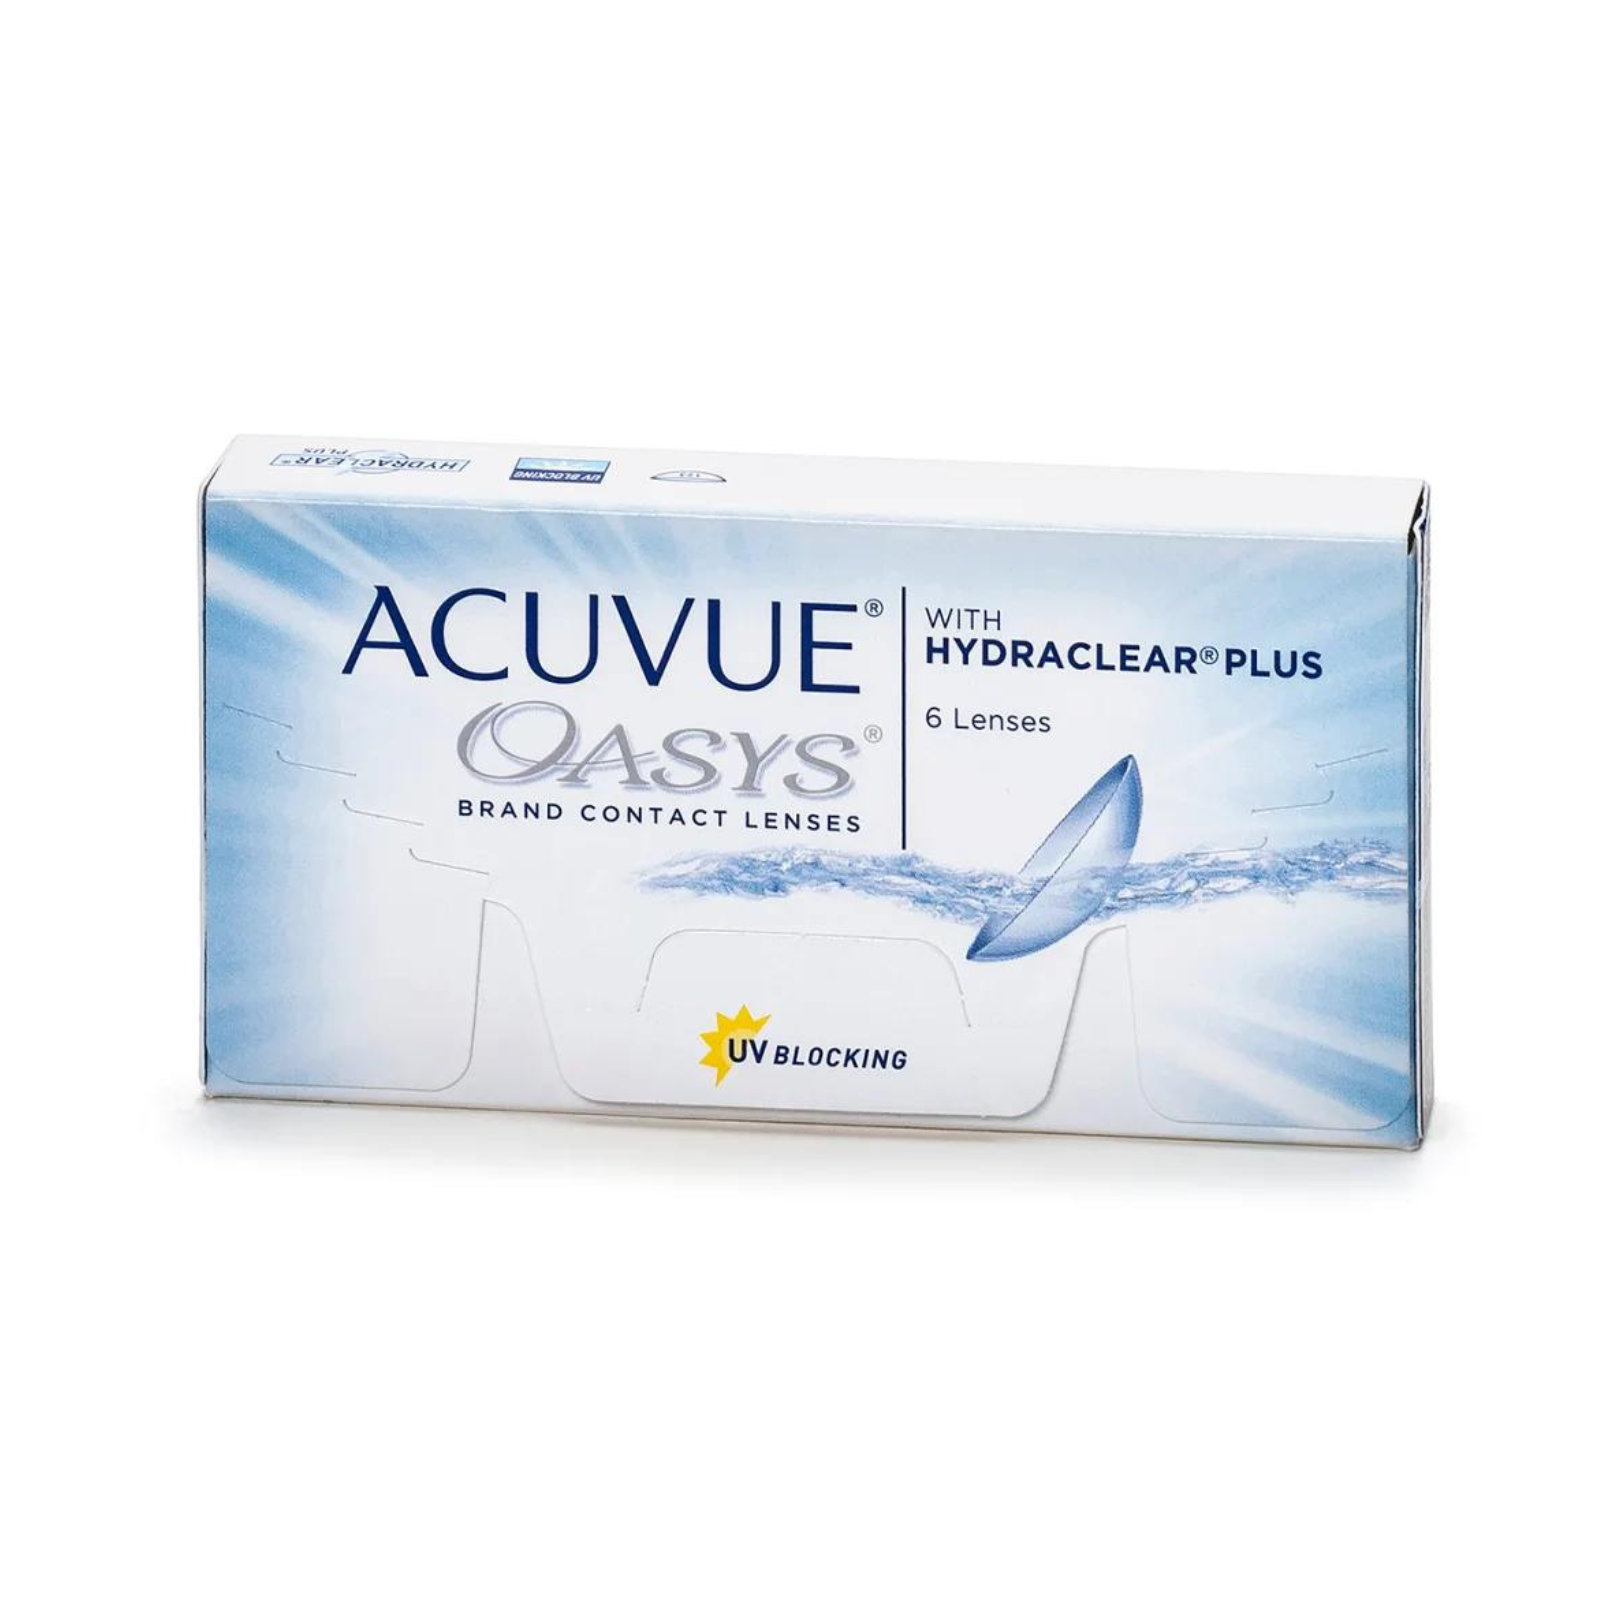 Acuvue Oasys, 2-week lenses